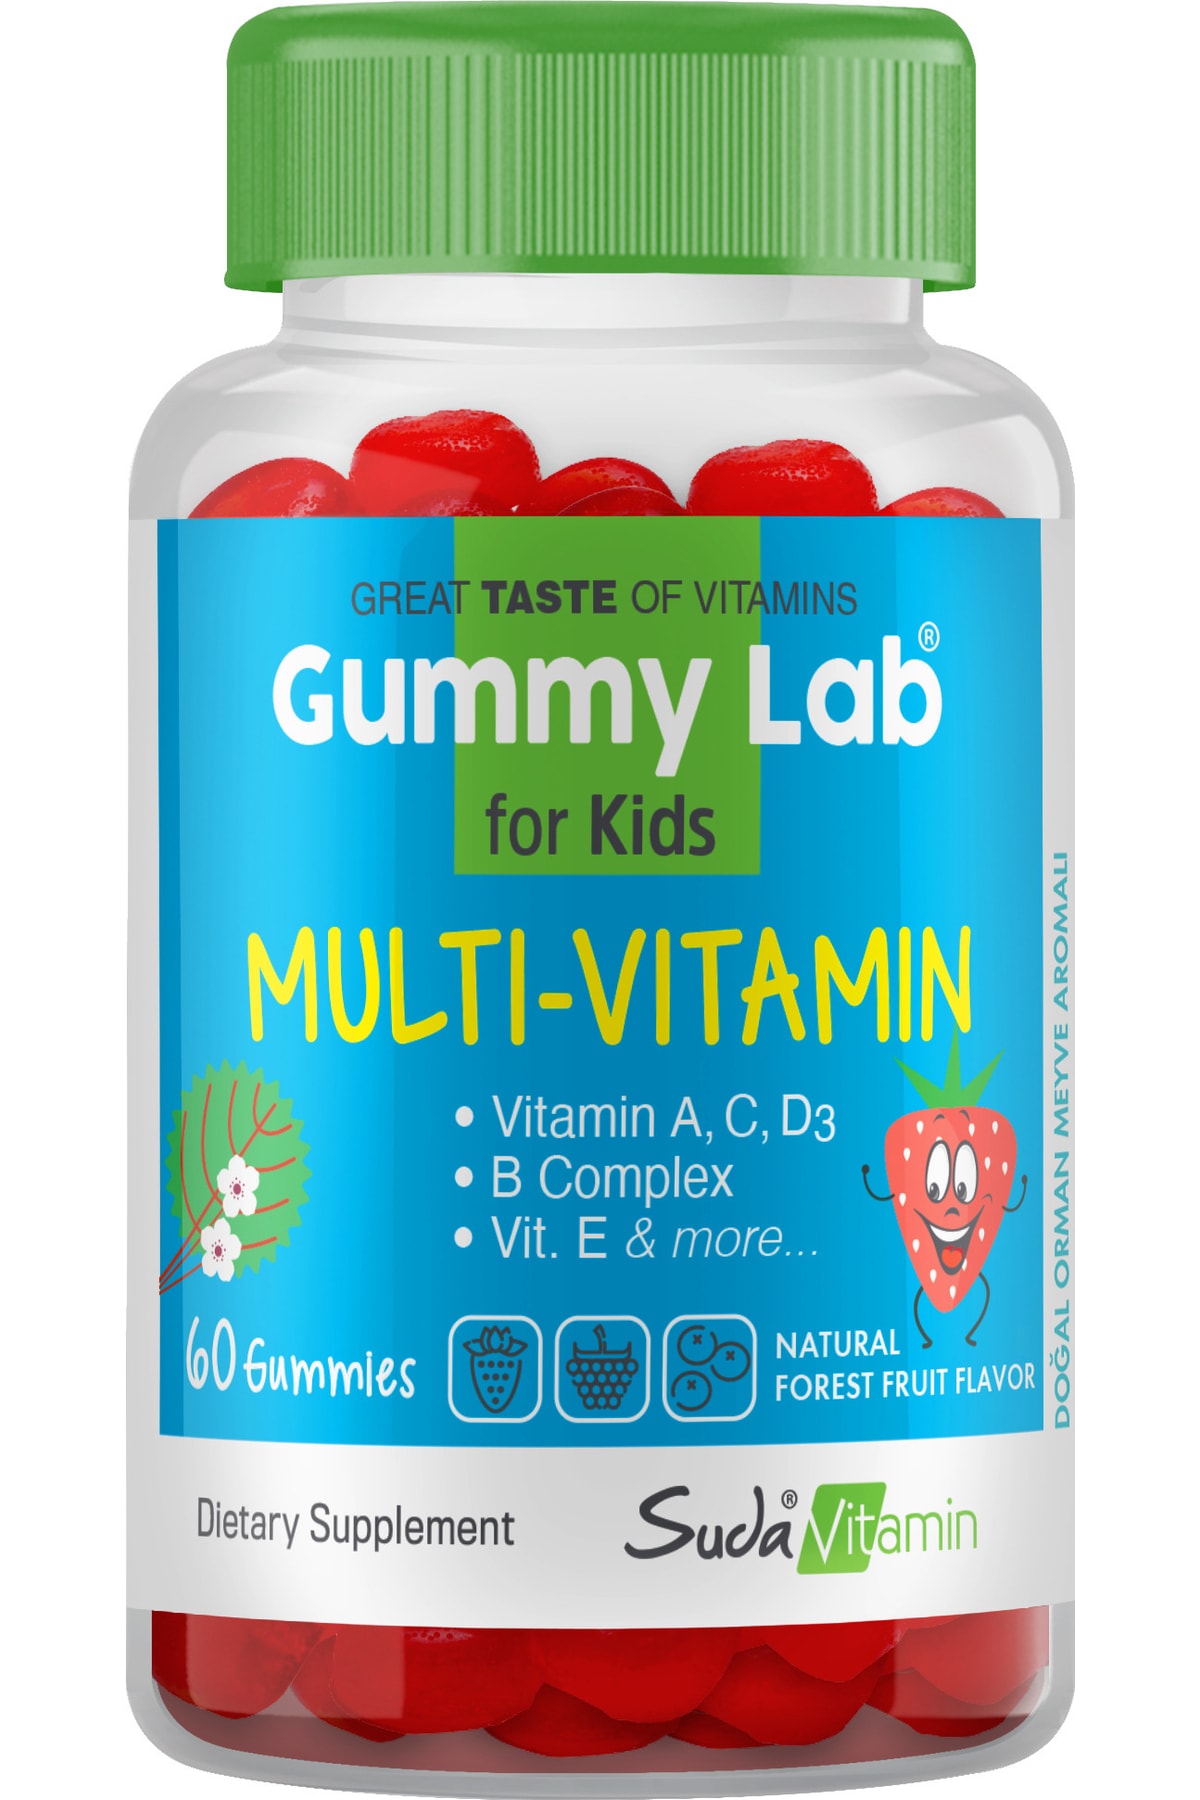 Suda Vitamin Multı Vıtamın For Kıds Or.meyv.60 Gummies